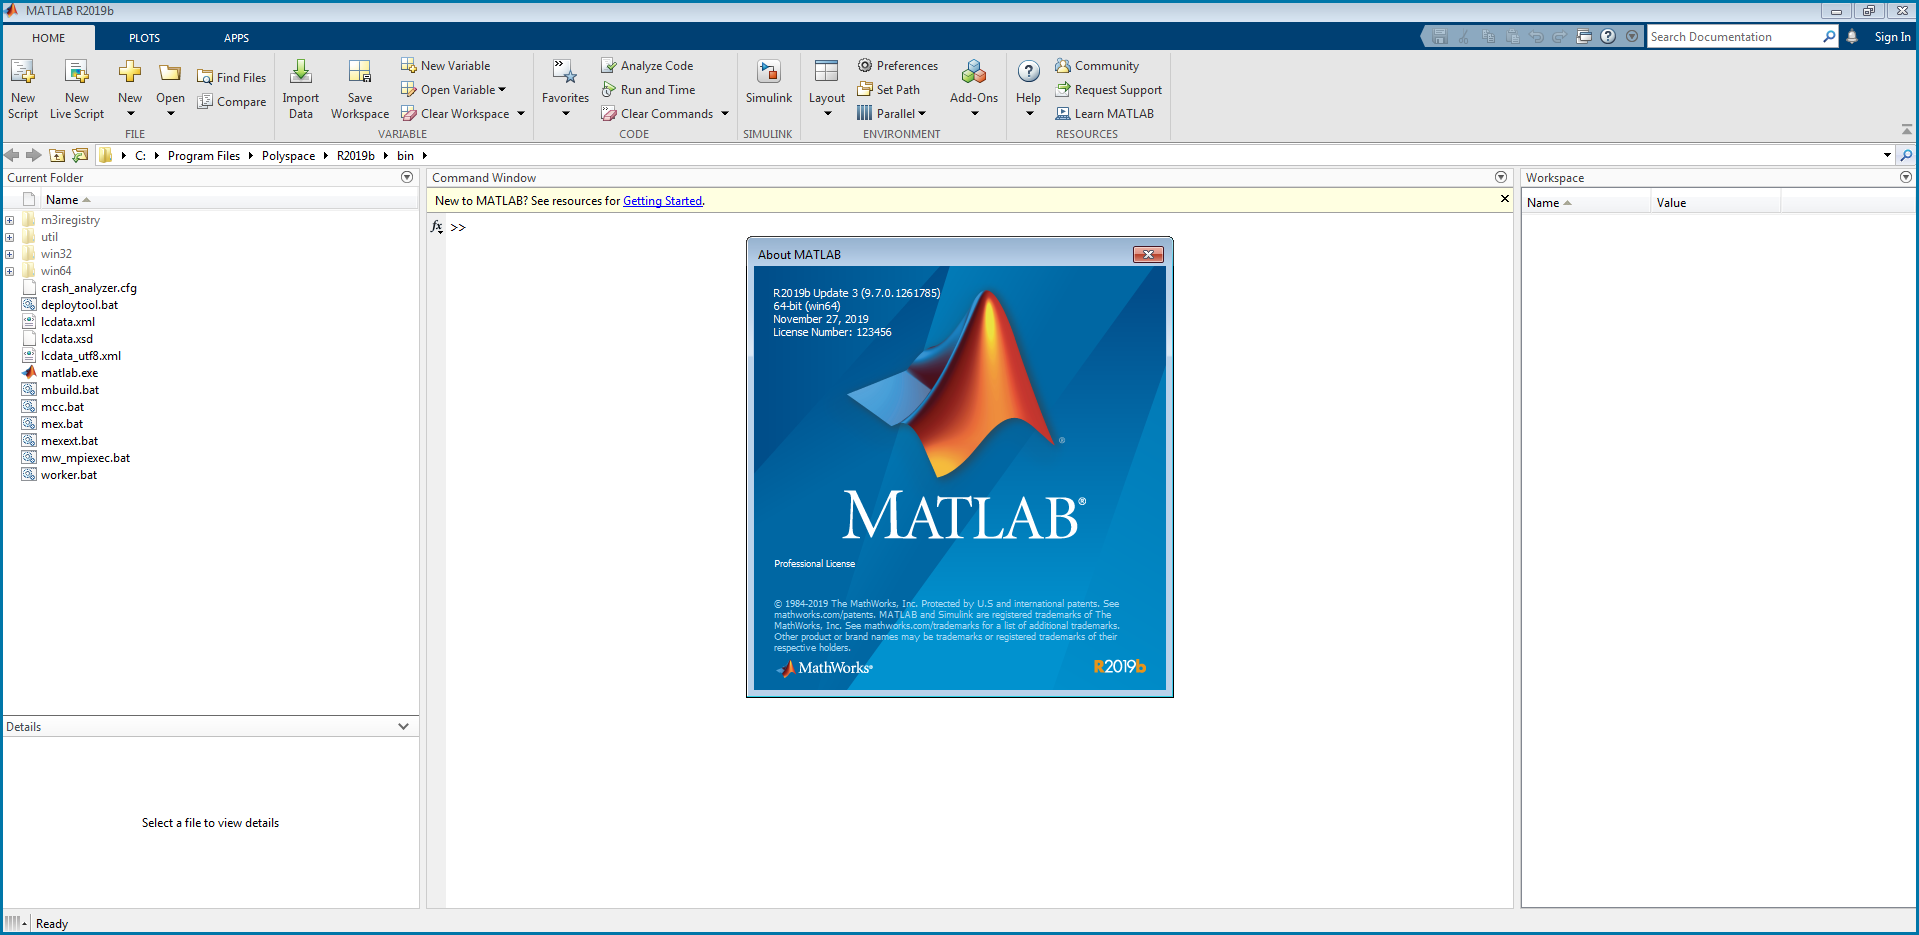 MATLAB: Phần mềm lập trình và hỗ trợ toán học cao cấp